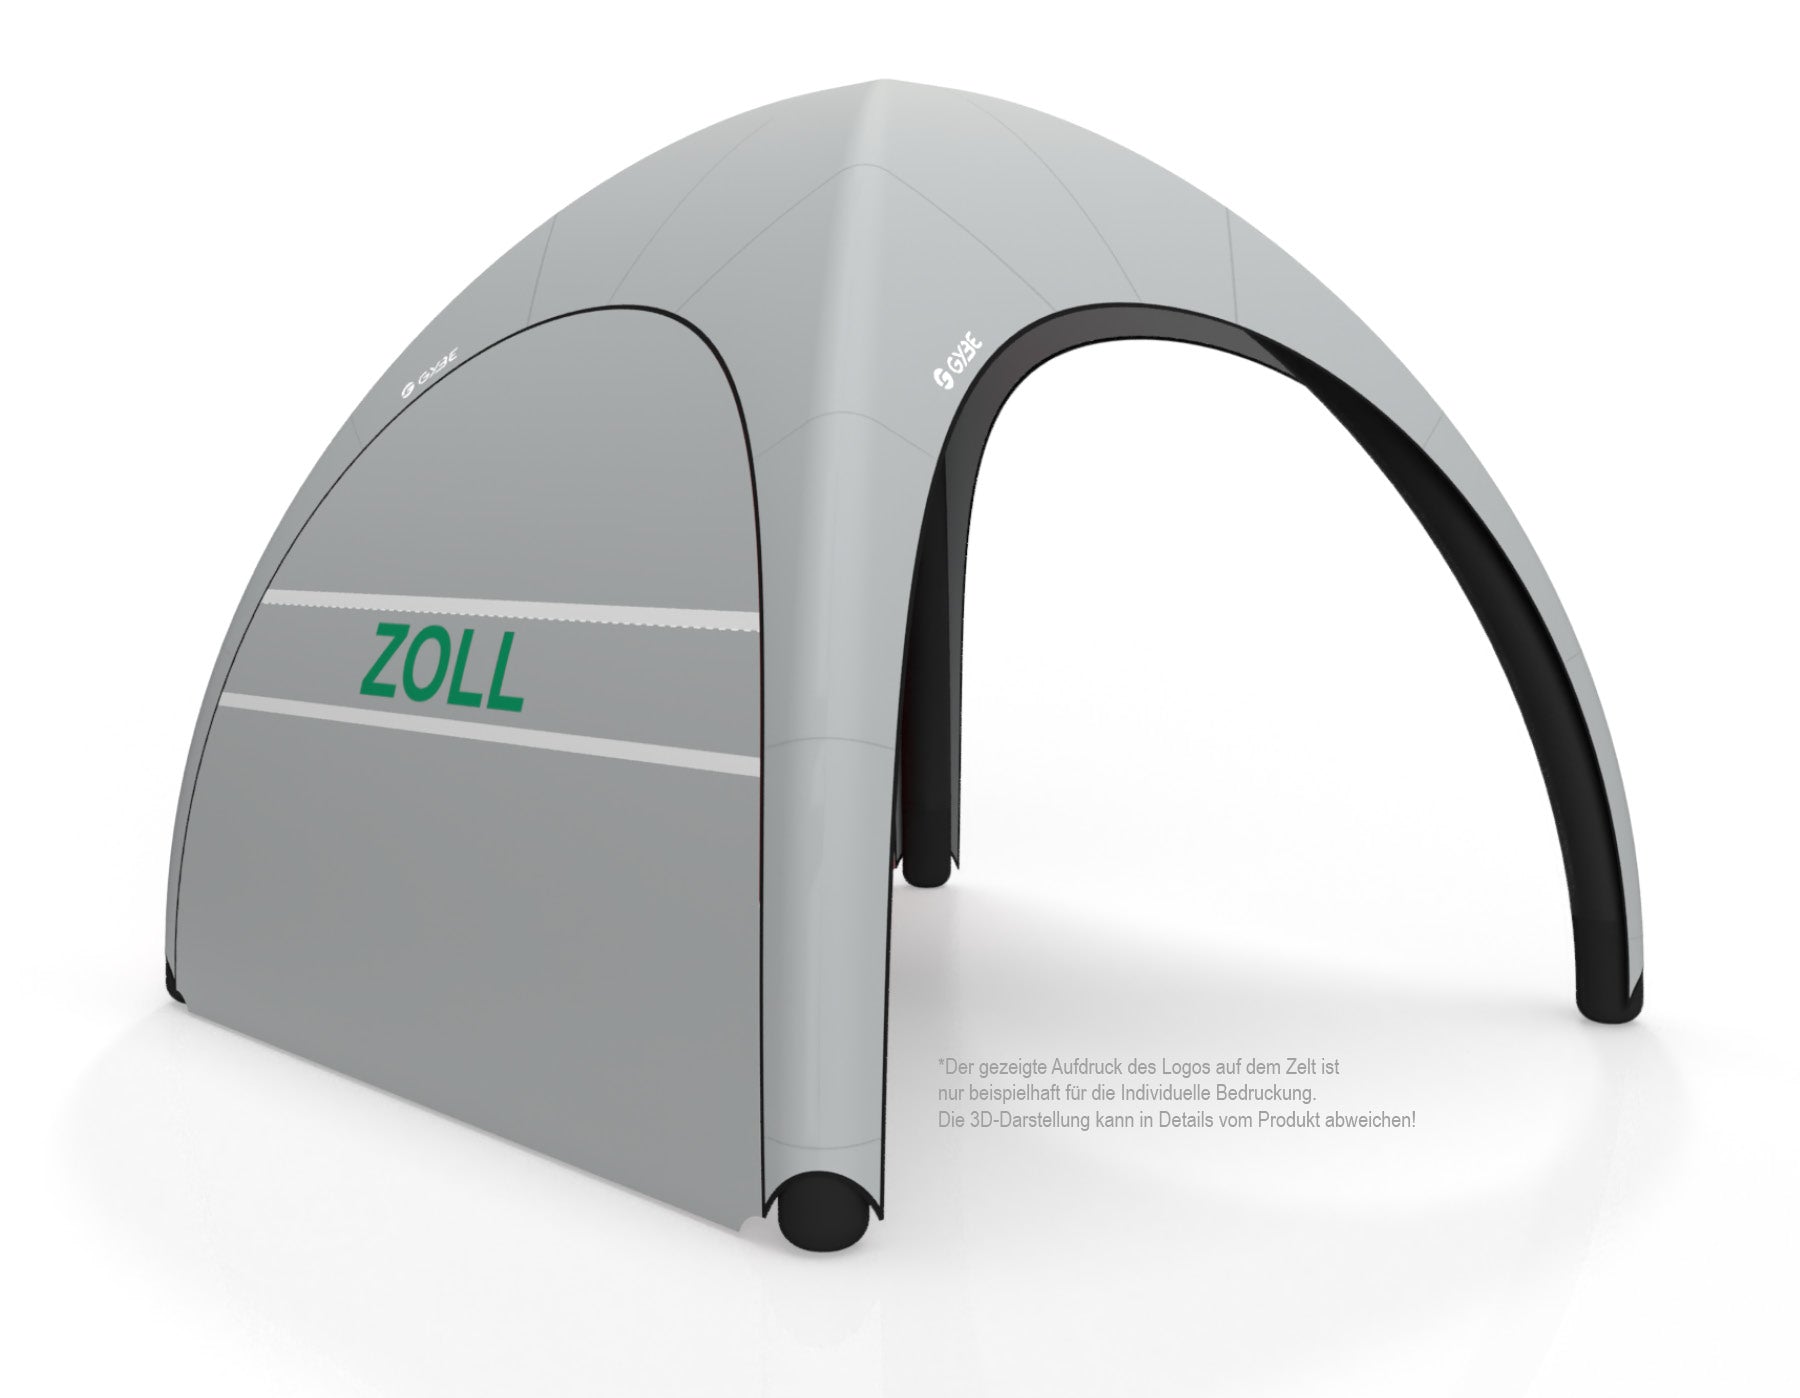 Aufblasbares Schnelleinsatzzelt Gybe Humanity Tent Komplettset mit ZOLL Logo | Sanitätszelt | Einsatzzelt